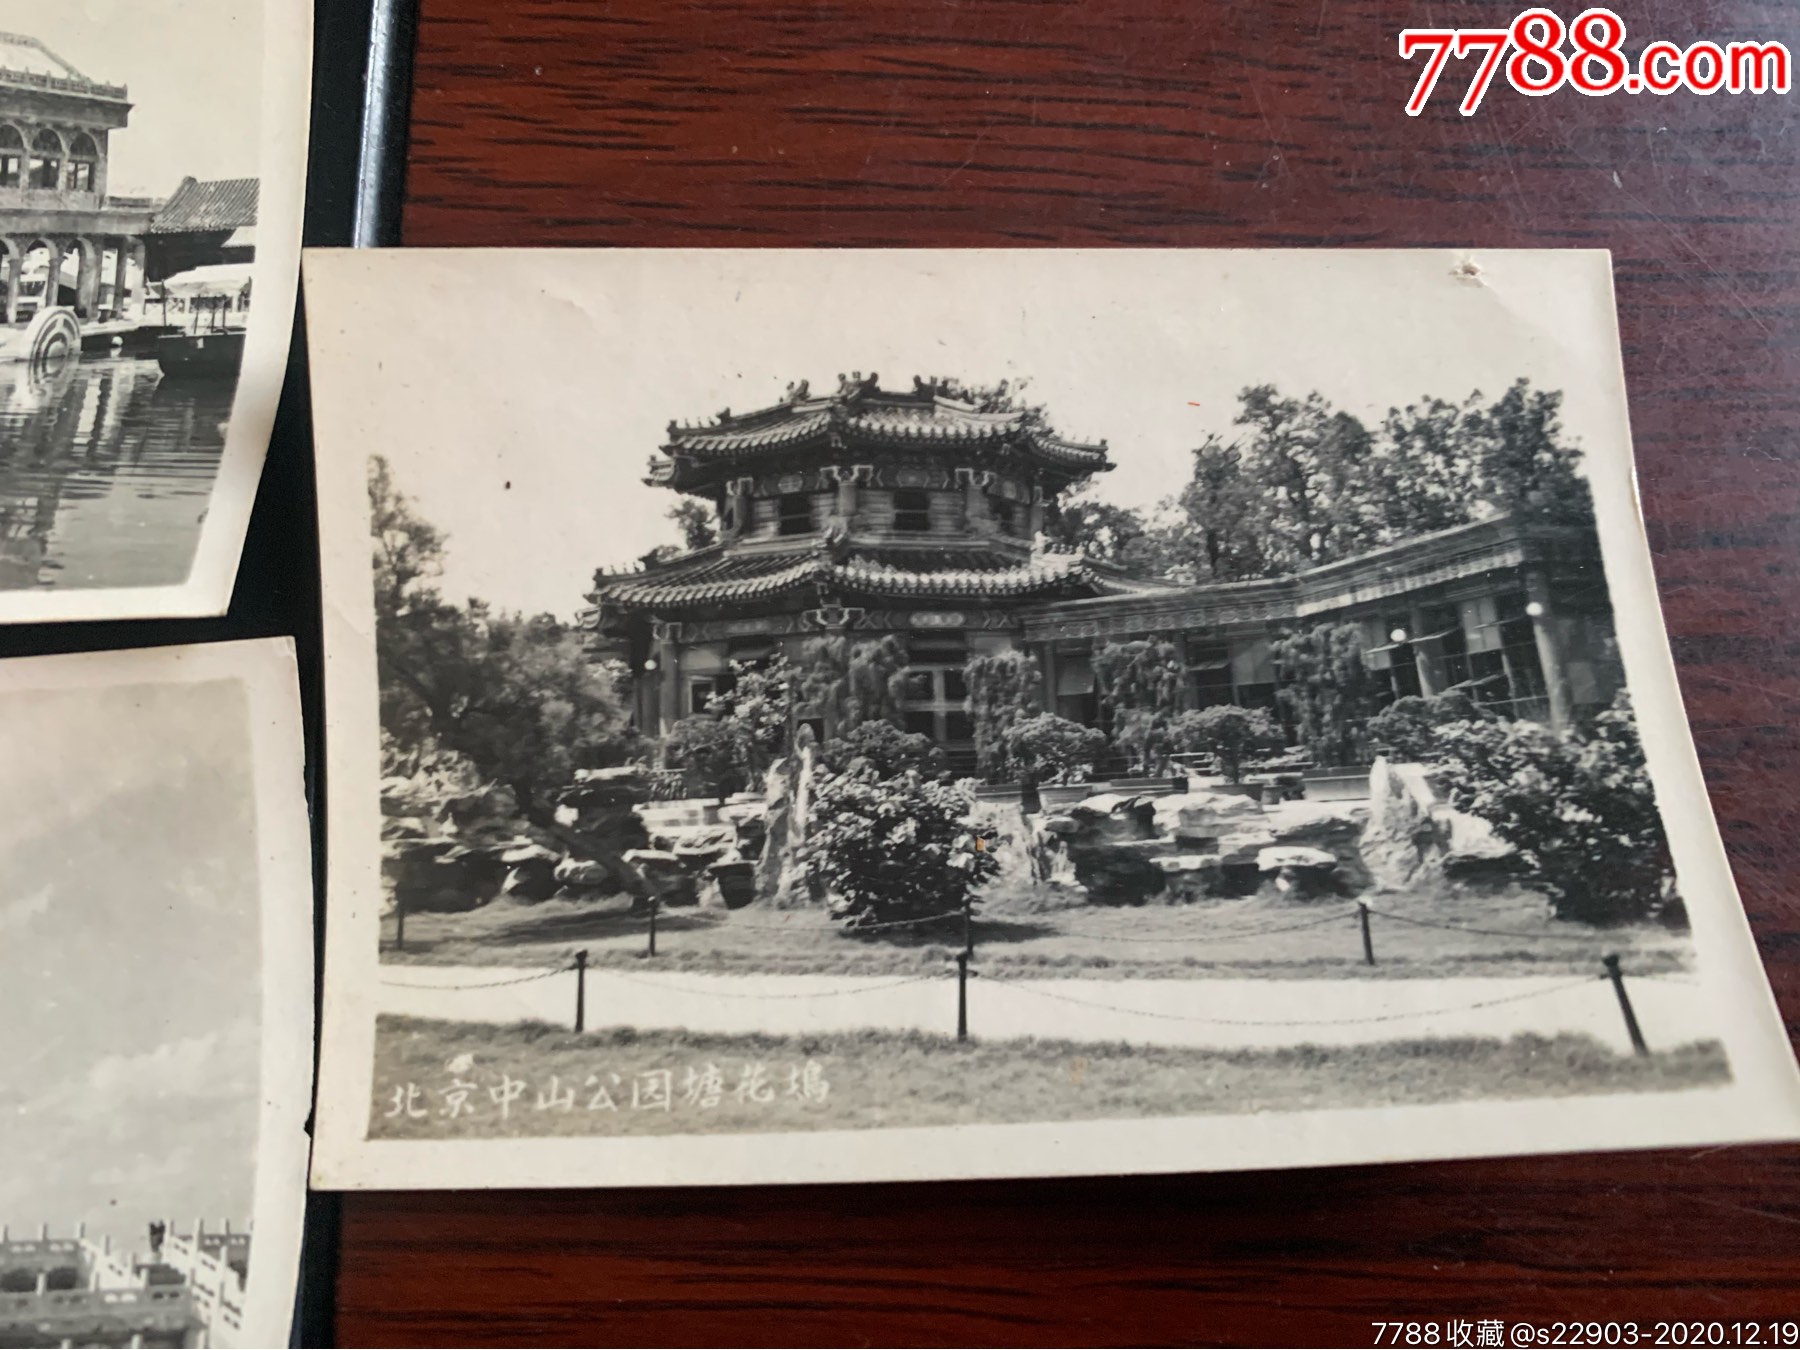 五十年代老照片:北京天台祈年殿中山公园塘花坞万寿山石肪3张约6.7?9.